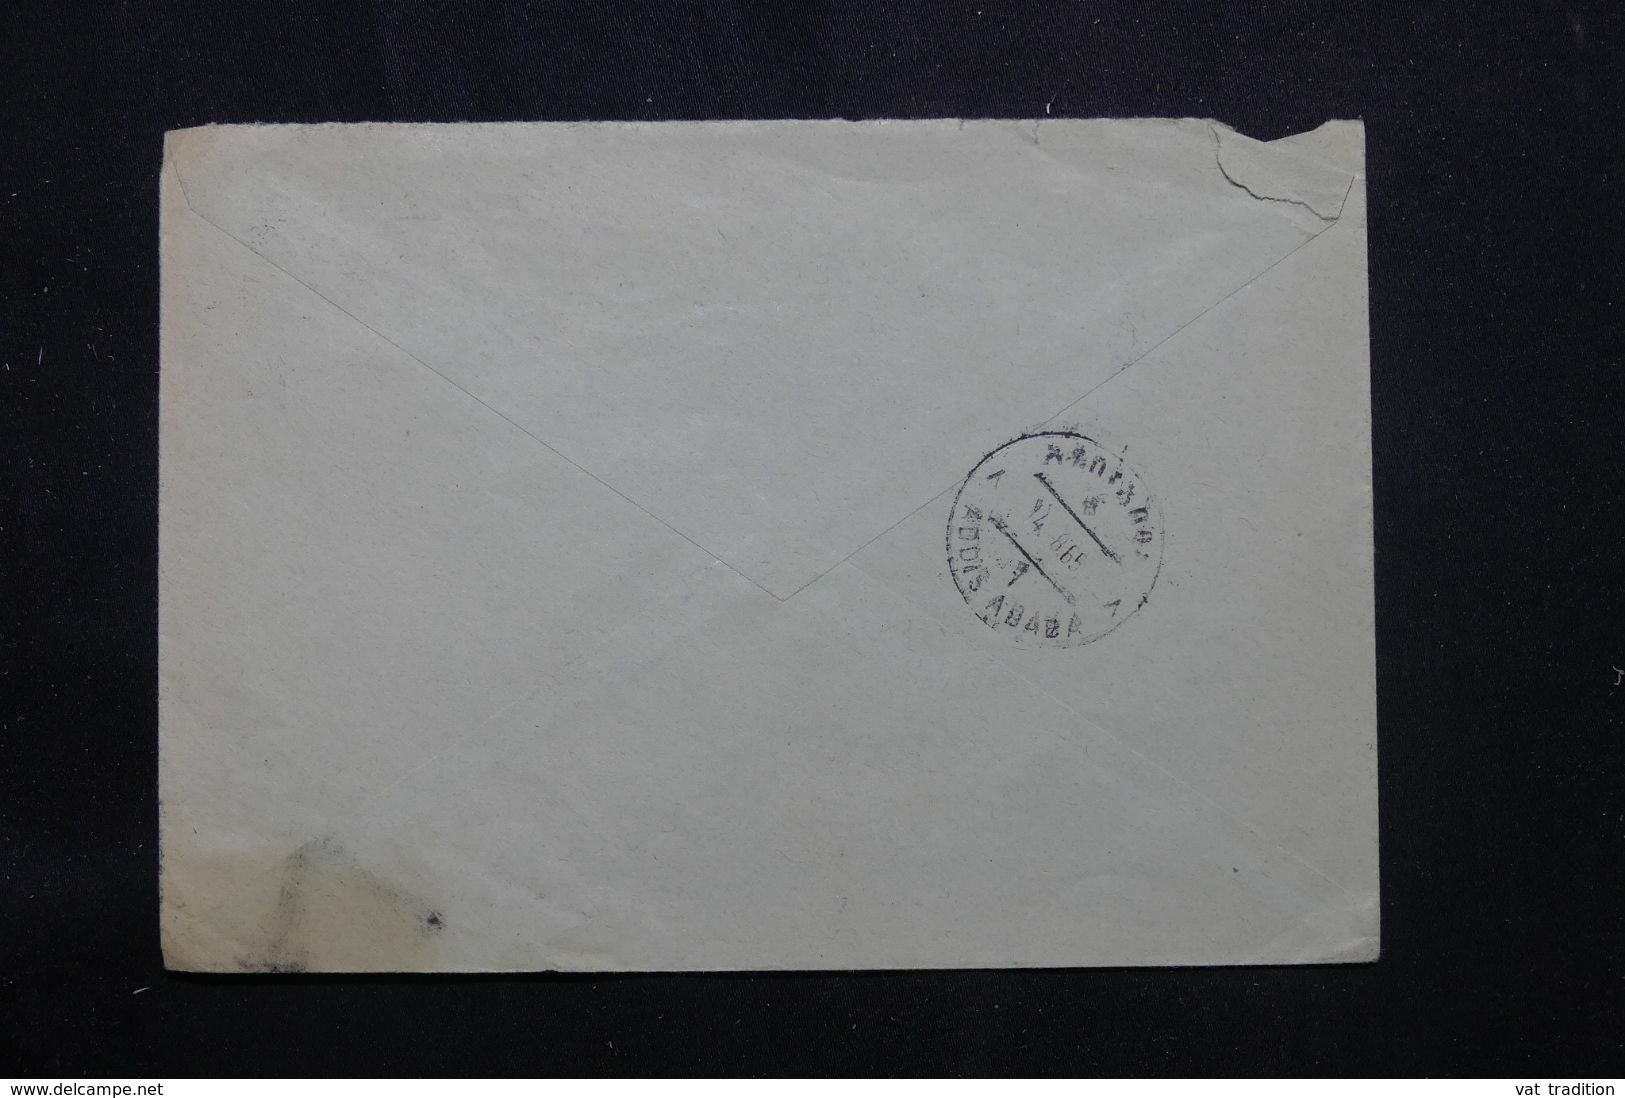 GRECE - Enveloppe Commerciale D'Athènes Pour L 'Ethiopie En 1965 - L 71814 - Covers & Documents